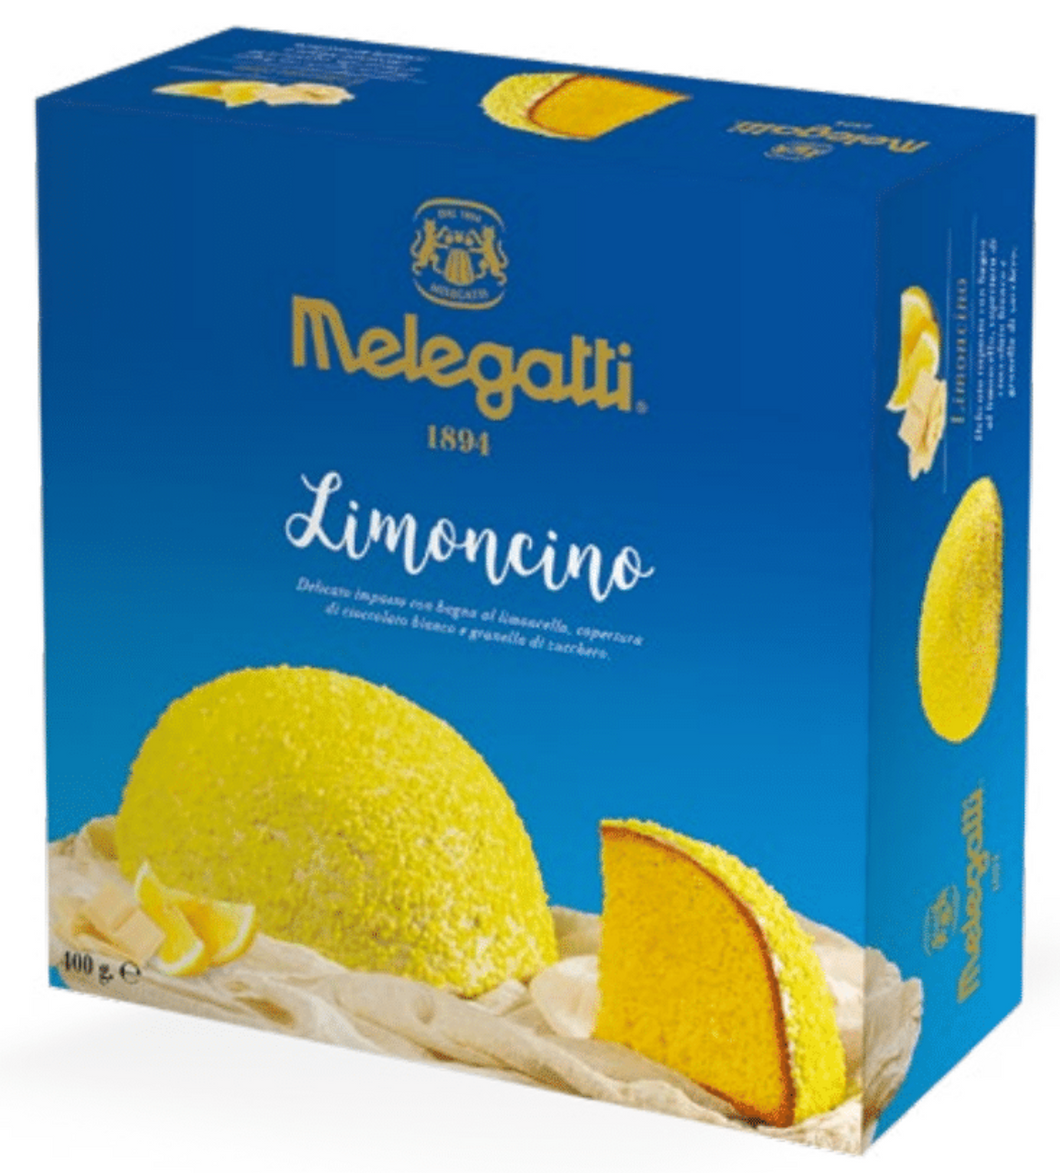 Melegatti - Limoncino - 400g